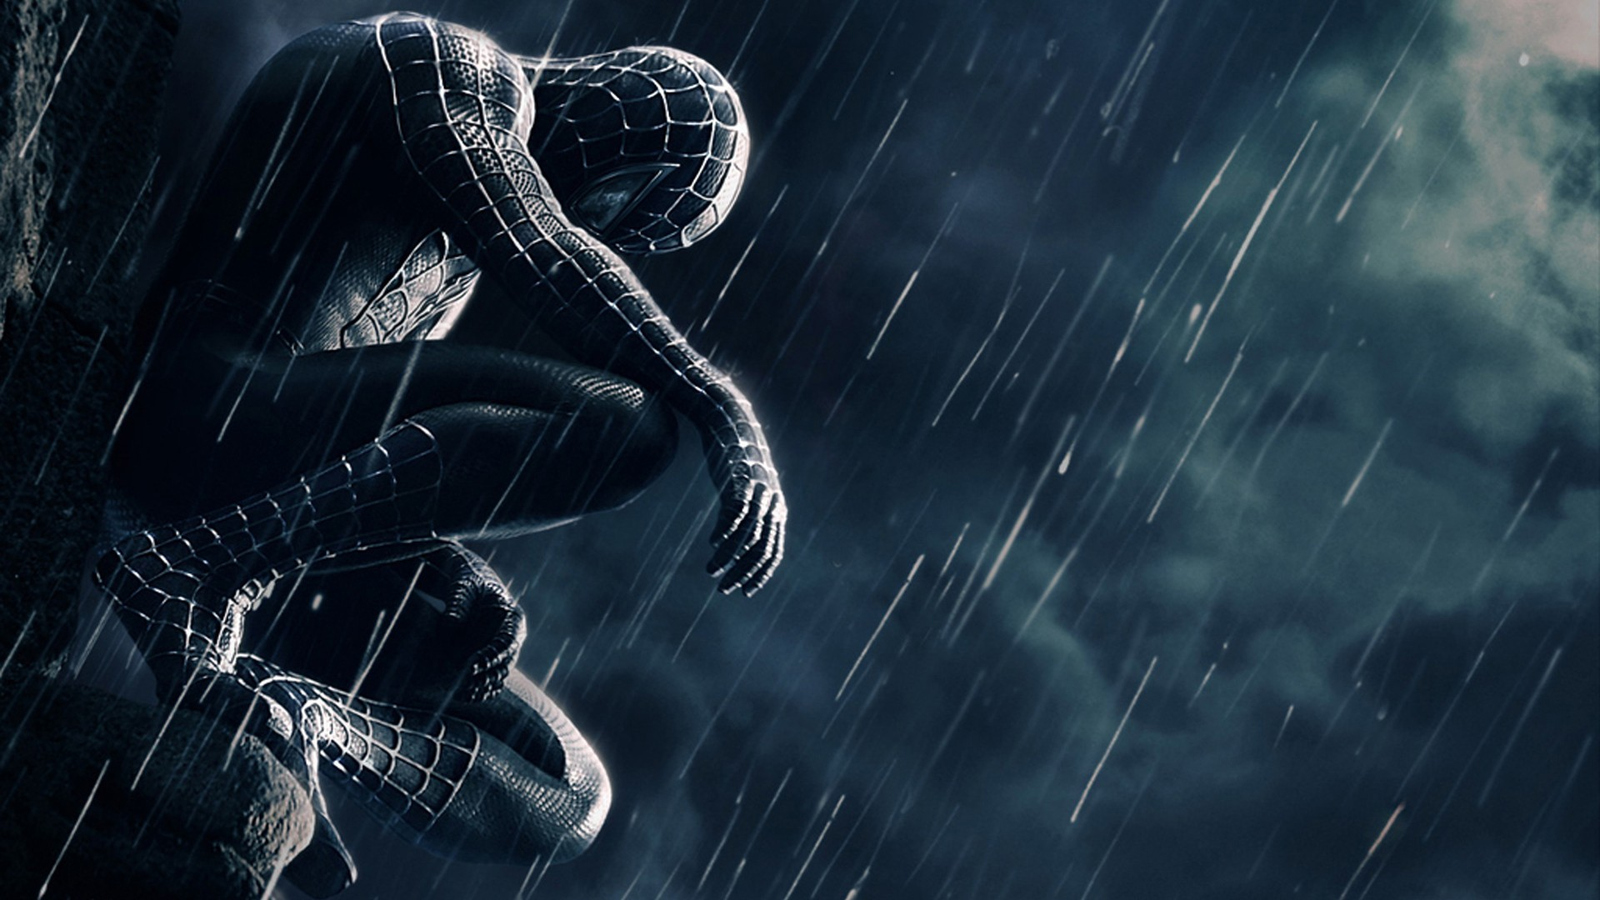 Download Black Spiderman 3, Black, Spider man Wallpaper in 1600x900  Resolution